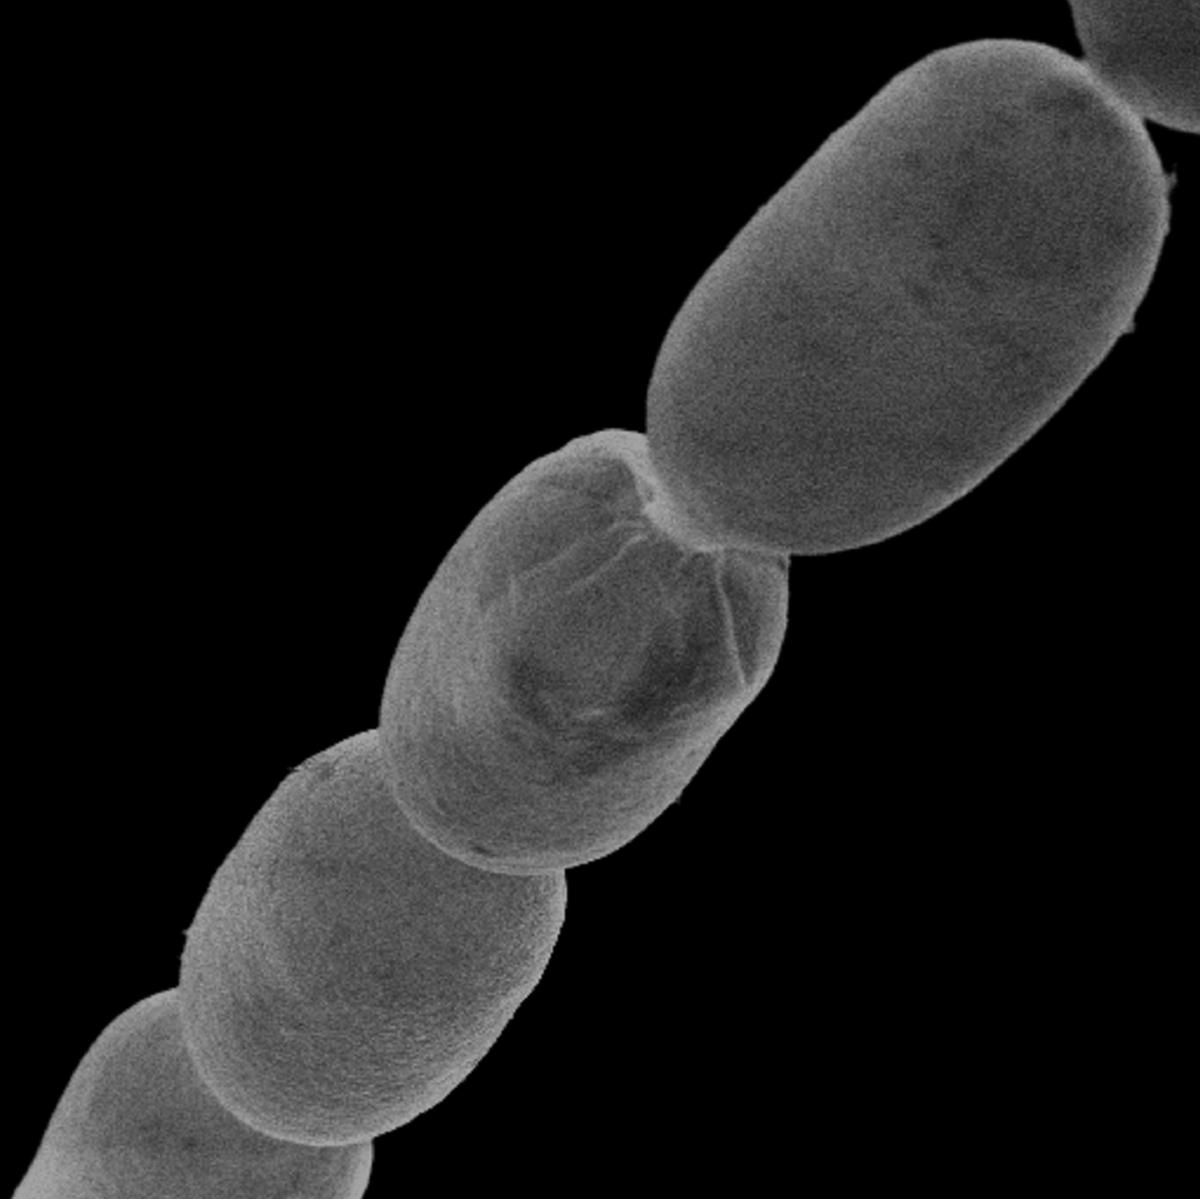 यह माइक्रोस्कोप फोटो थियोमार्गरीटा मैग्नीफिका बैक्टीरिया सेल का हिस्सा दिखाता है।